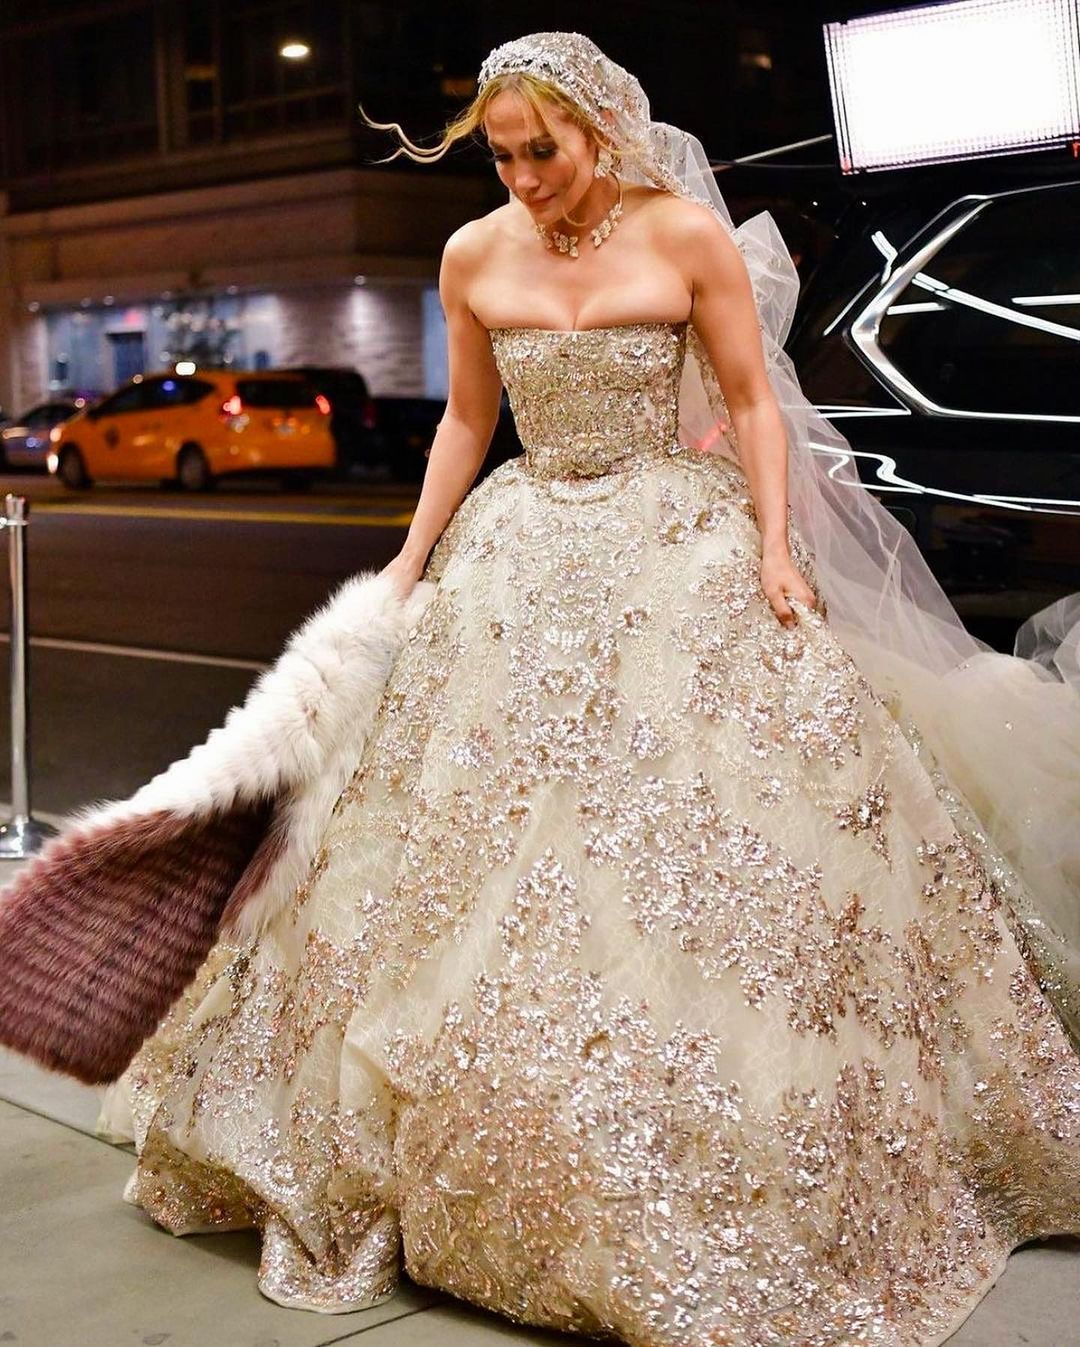 Η Jennifer Lopez νύφη με παραμυθένιο νυφικό